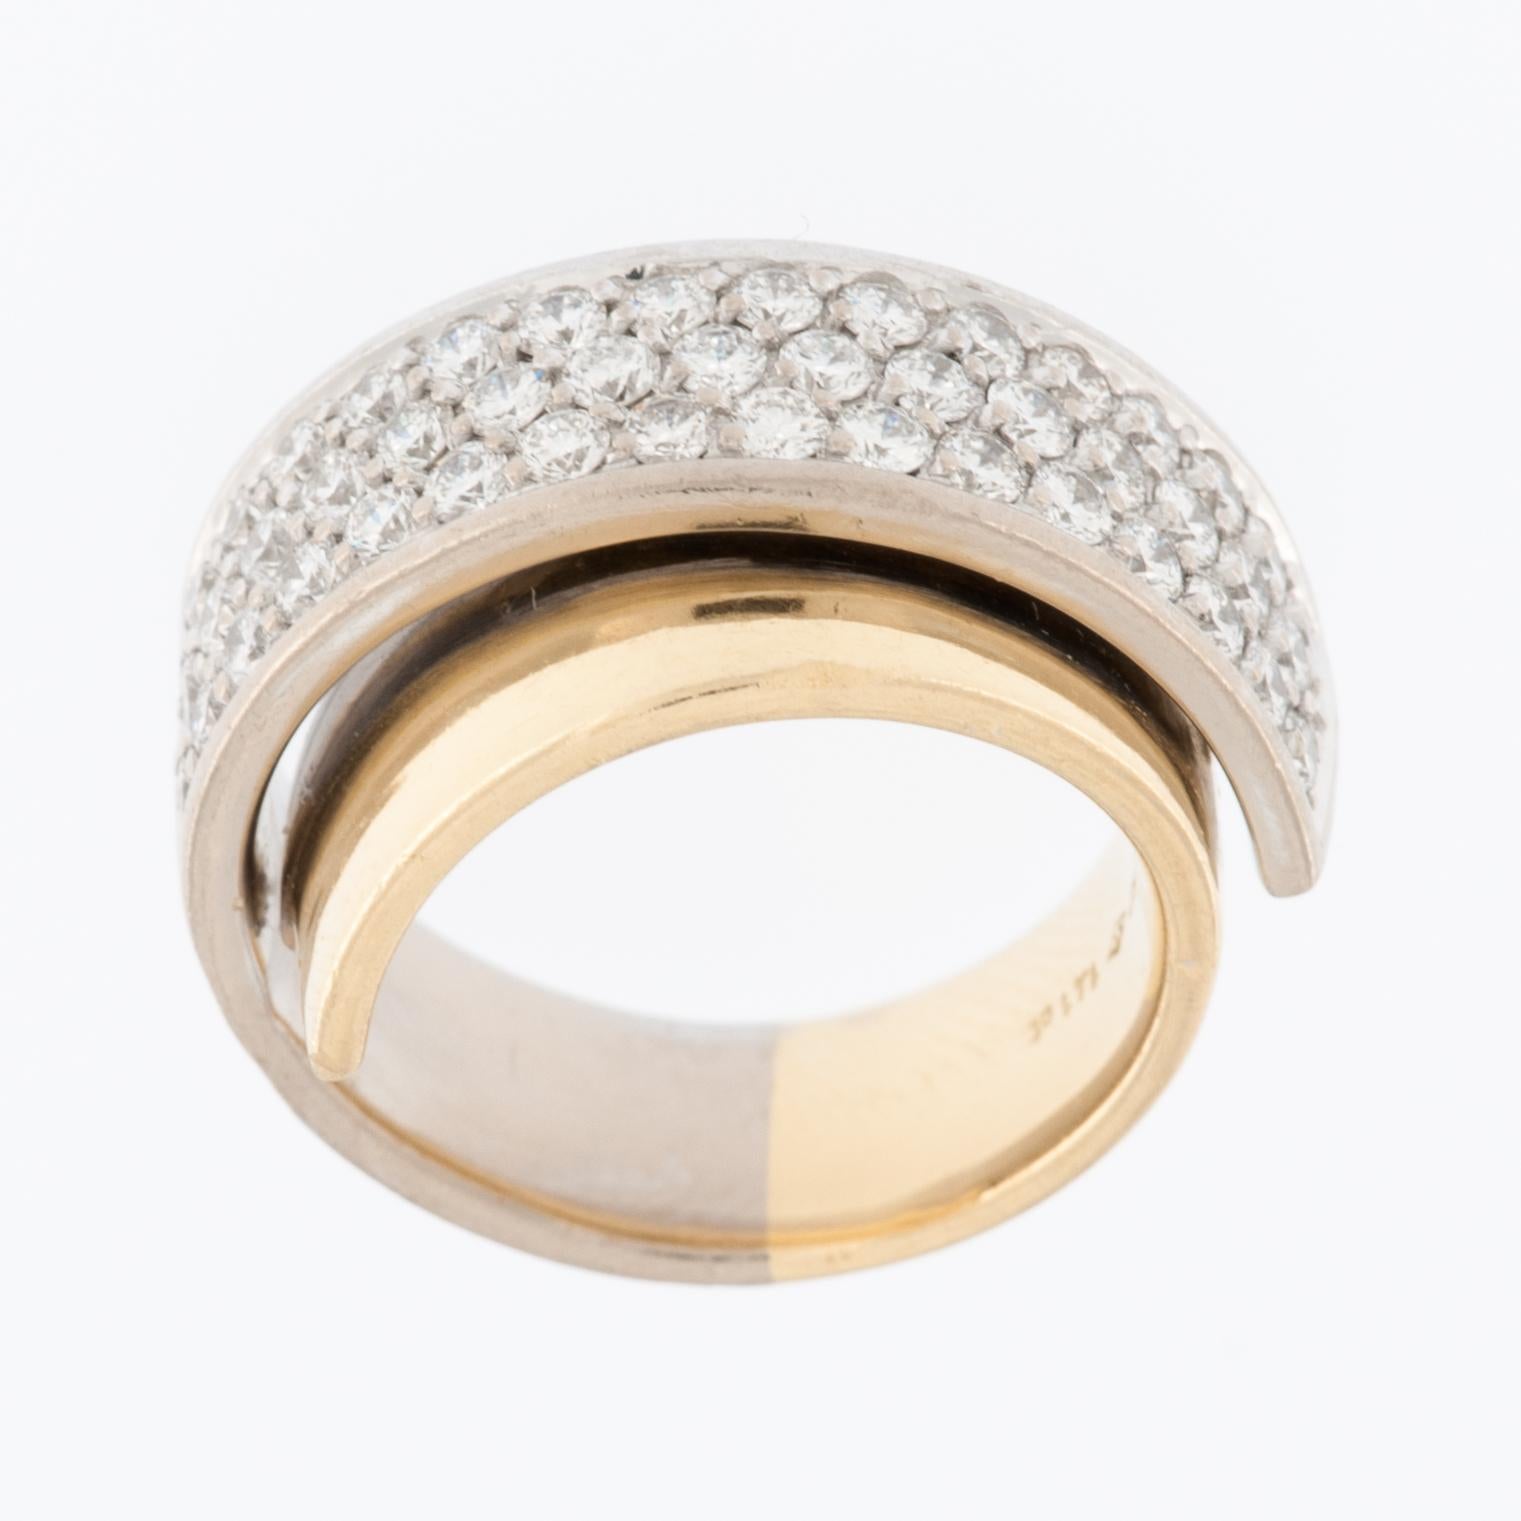 Der Millennial-Diamantring aus 18 Karat Gelb- und Weißgold mit Perlenfassung ist ein atemberaubendes und modernes Schmuckstück, das die moderne Generation anspricht. Der Ring ist aus hochwertigem 18-karätigem (18Kt) Gelb- und Weißgold gefertigt. Die